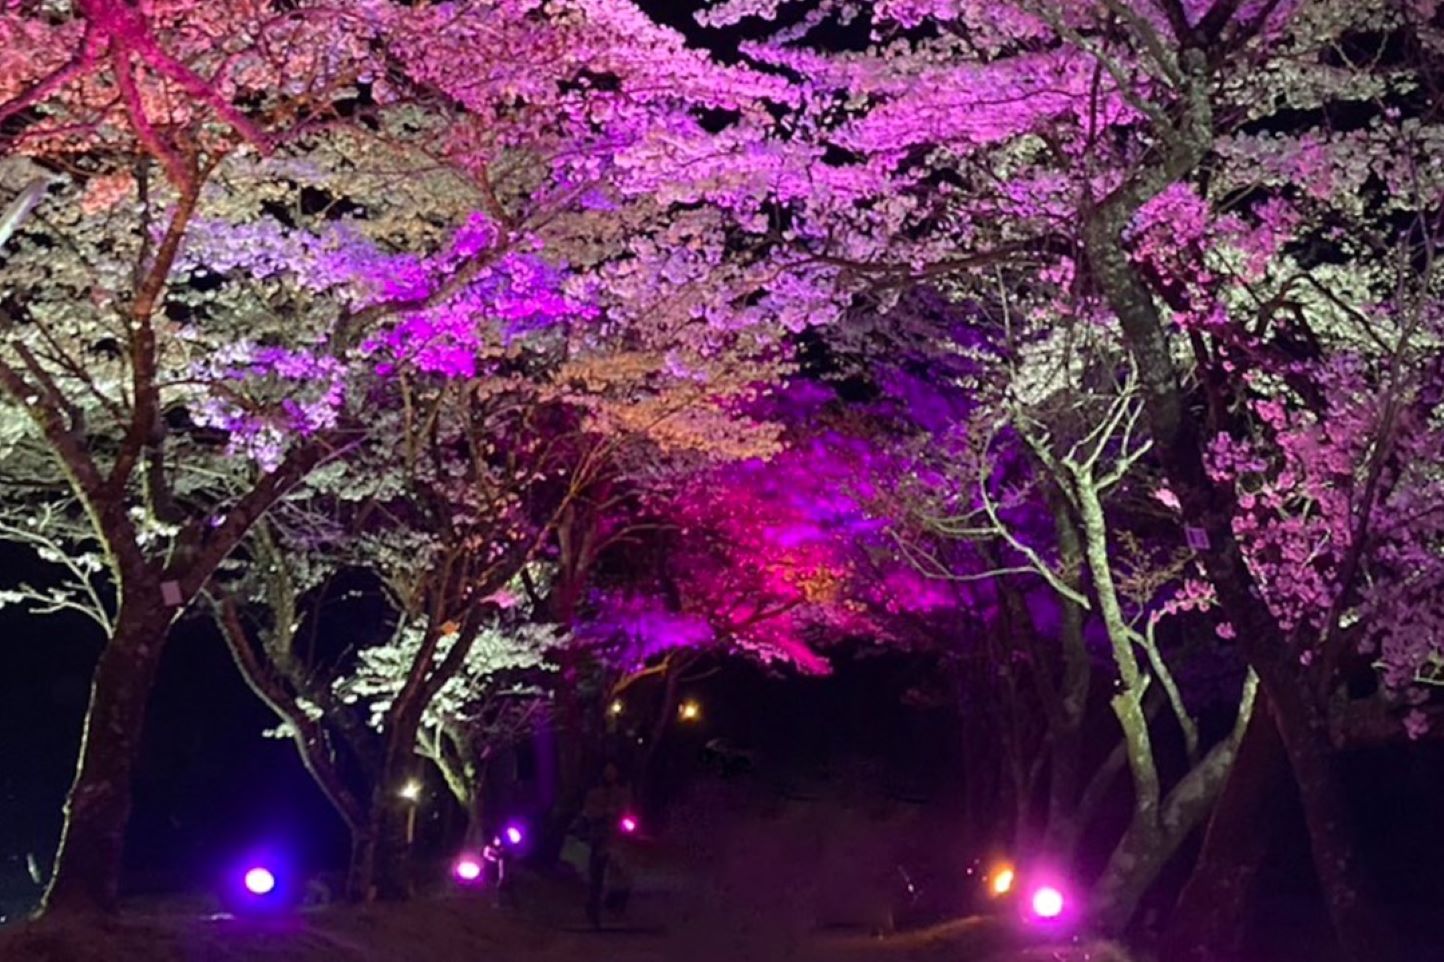 明建神社参道 夜桜ライトアップイベント スライダー画像1